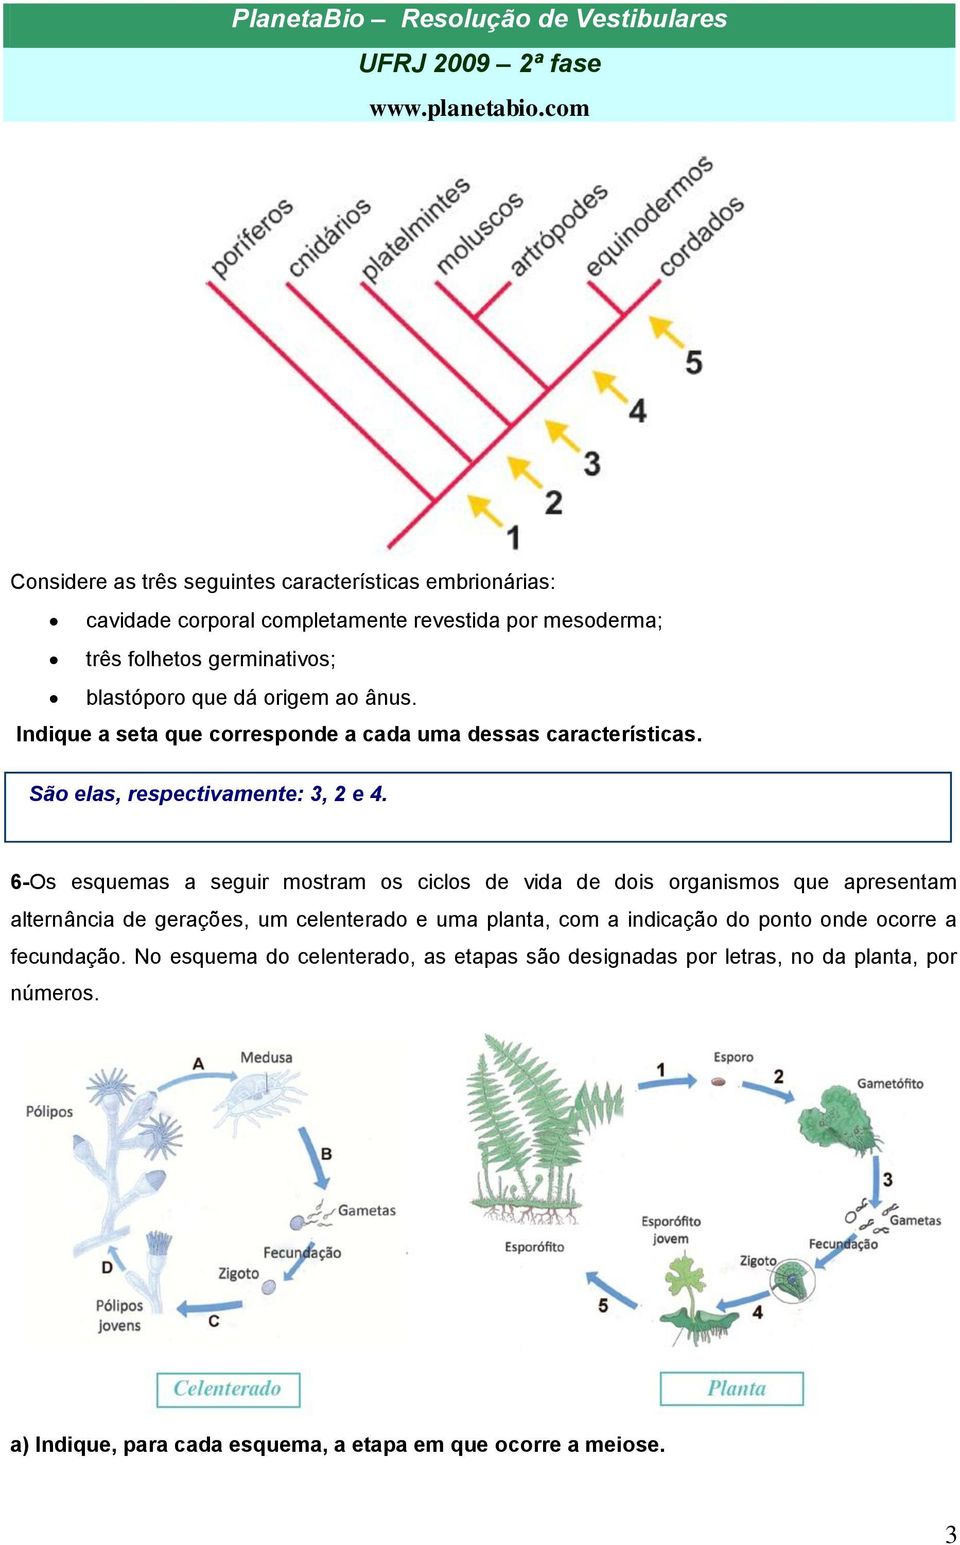 6-Os esquemas a seguir mostram os ciclos de vida de dois organismos que apresentam alternância de gerações, um celenterado e uma planta, com a indicação do